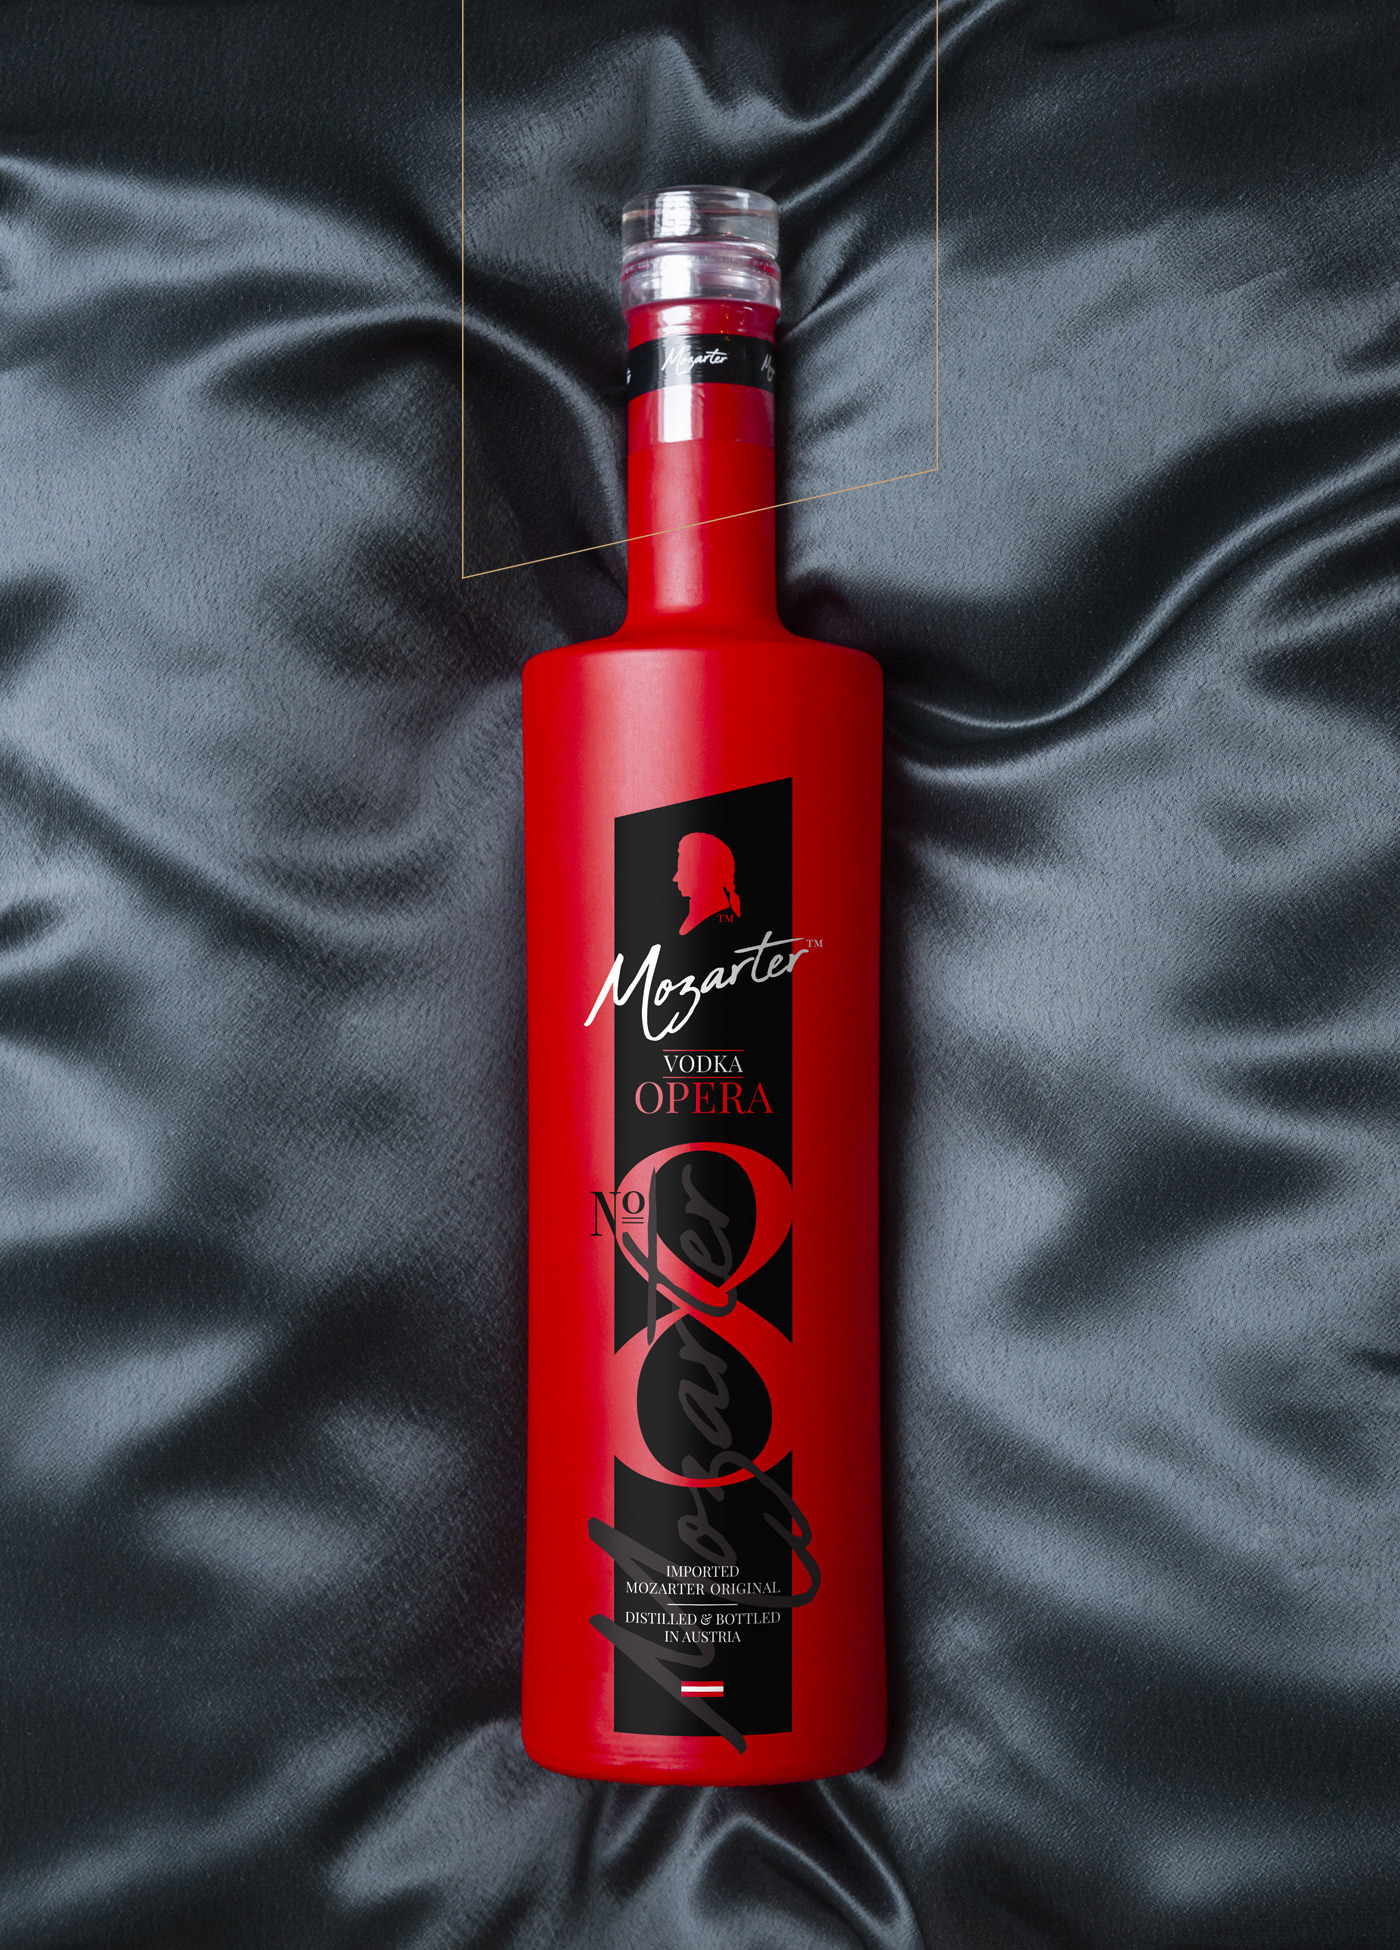 Mozarter Vodka opera red bottle Corporate Identity austria munich Classic #HP  